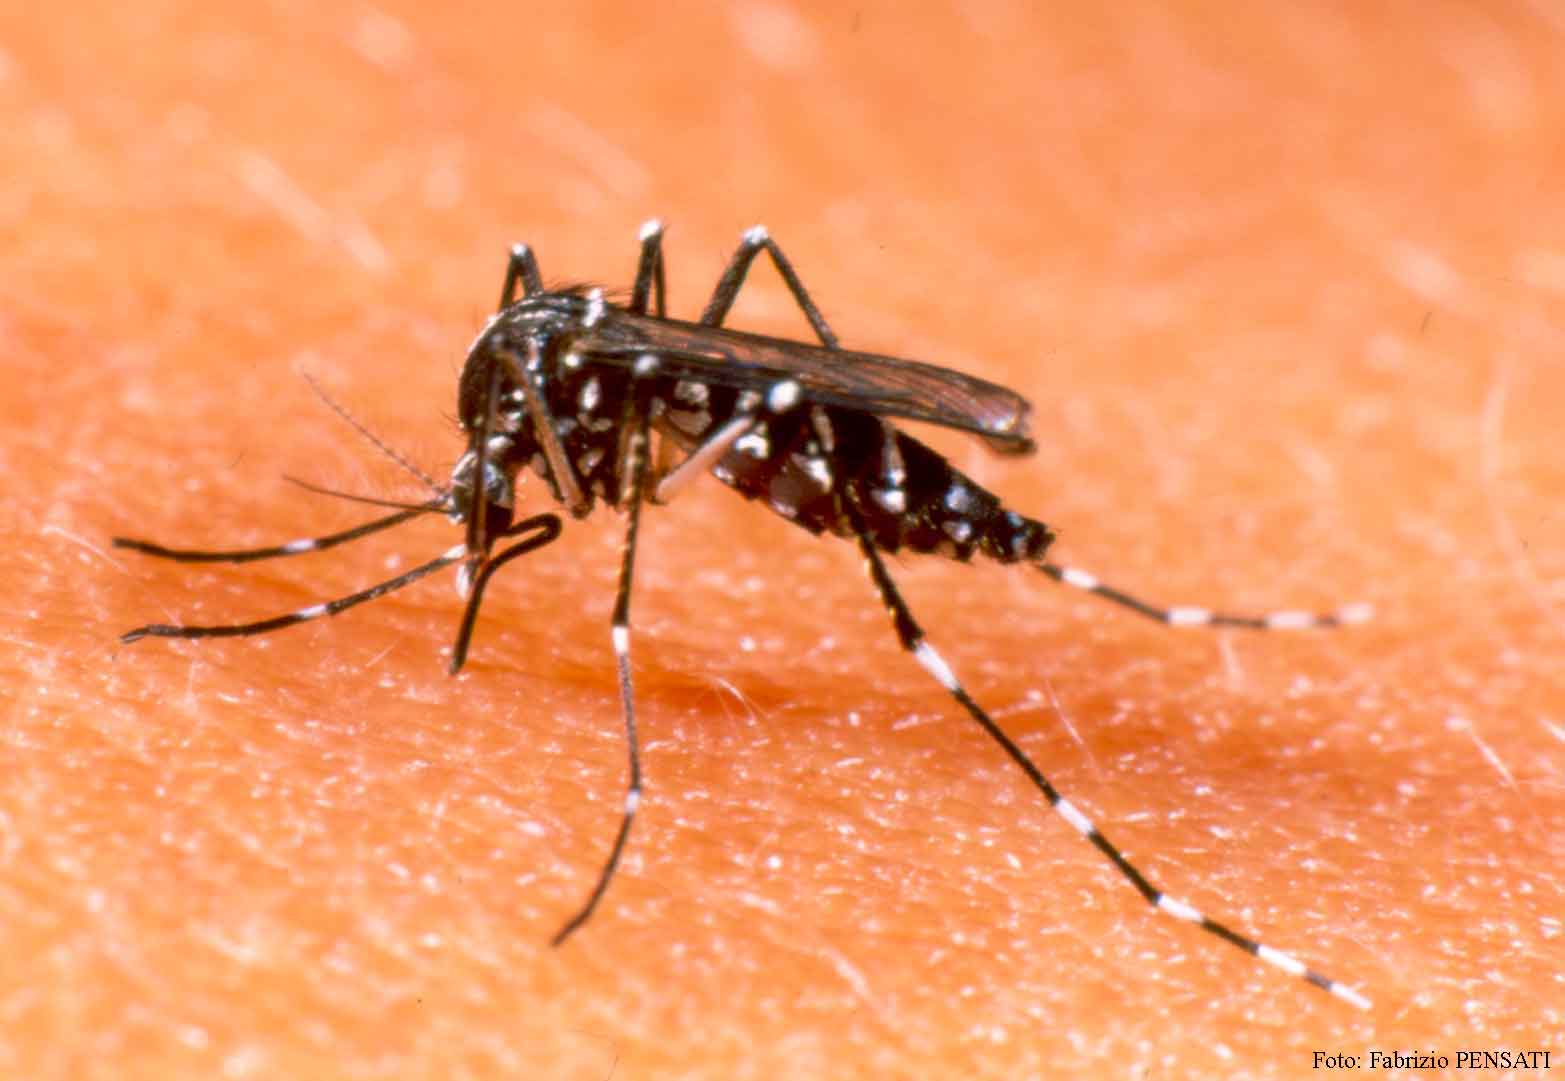  Prefeitura reforça combate a dengue com nebulizador veicular